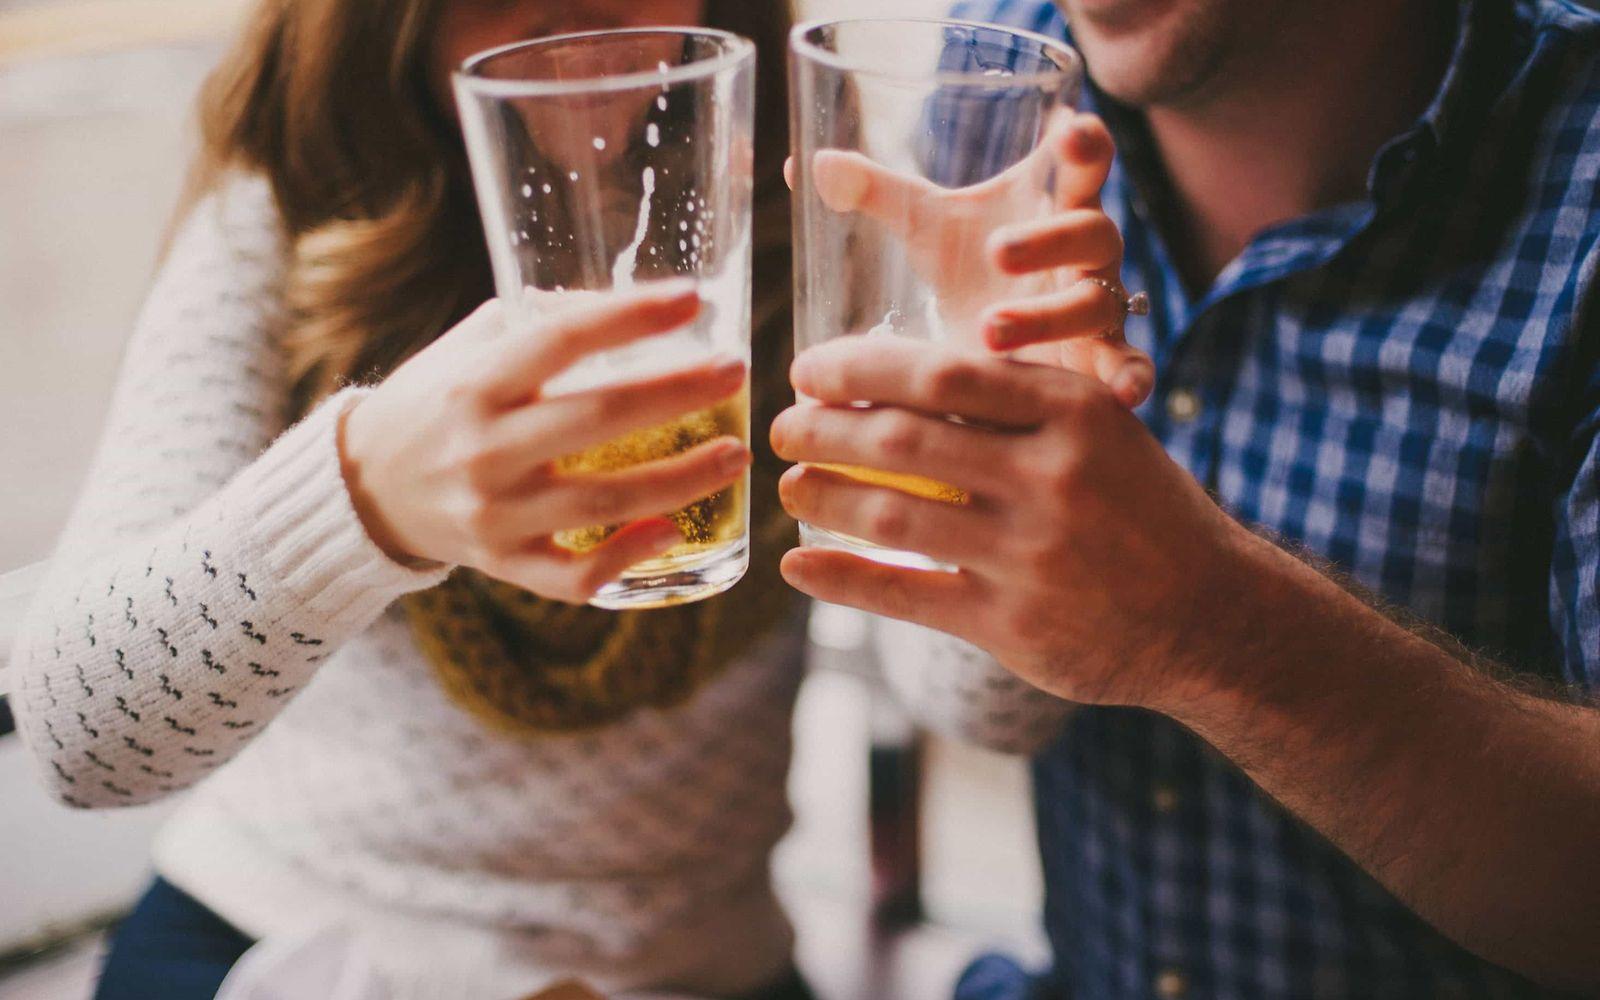 Alkoholsucht: Ein Mann und eine Frau halten zwei halb gefüllte Biergläser aneinander.